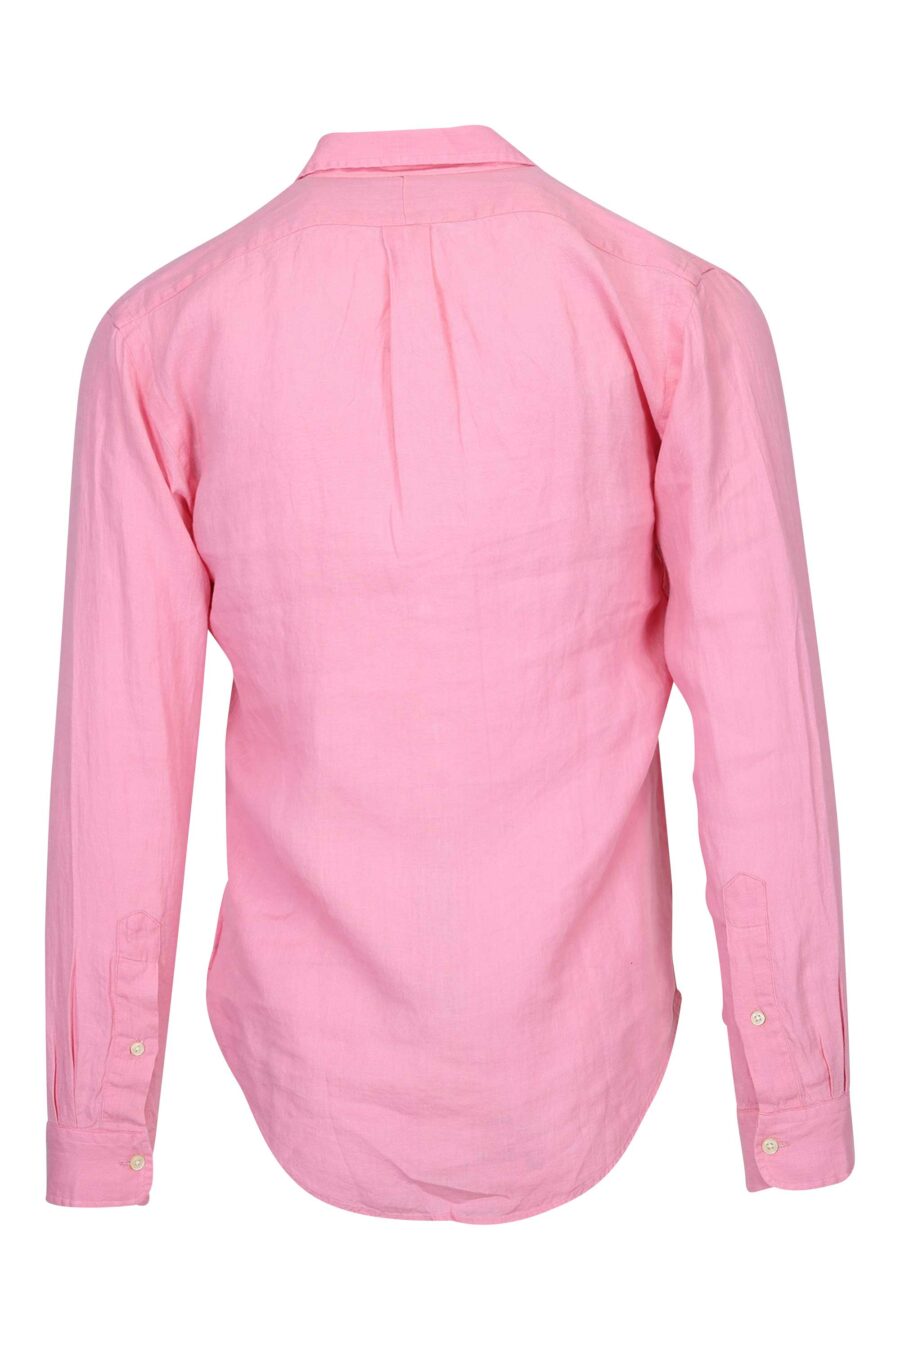 Chemise rose avec mini-logo "polo" - 3616535874473 1